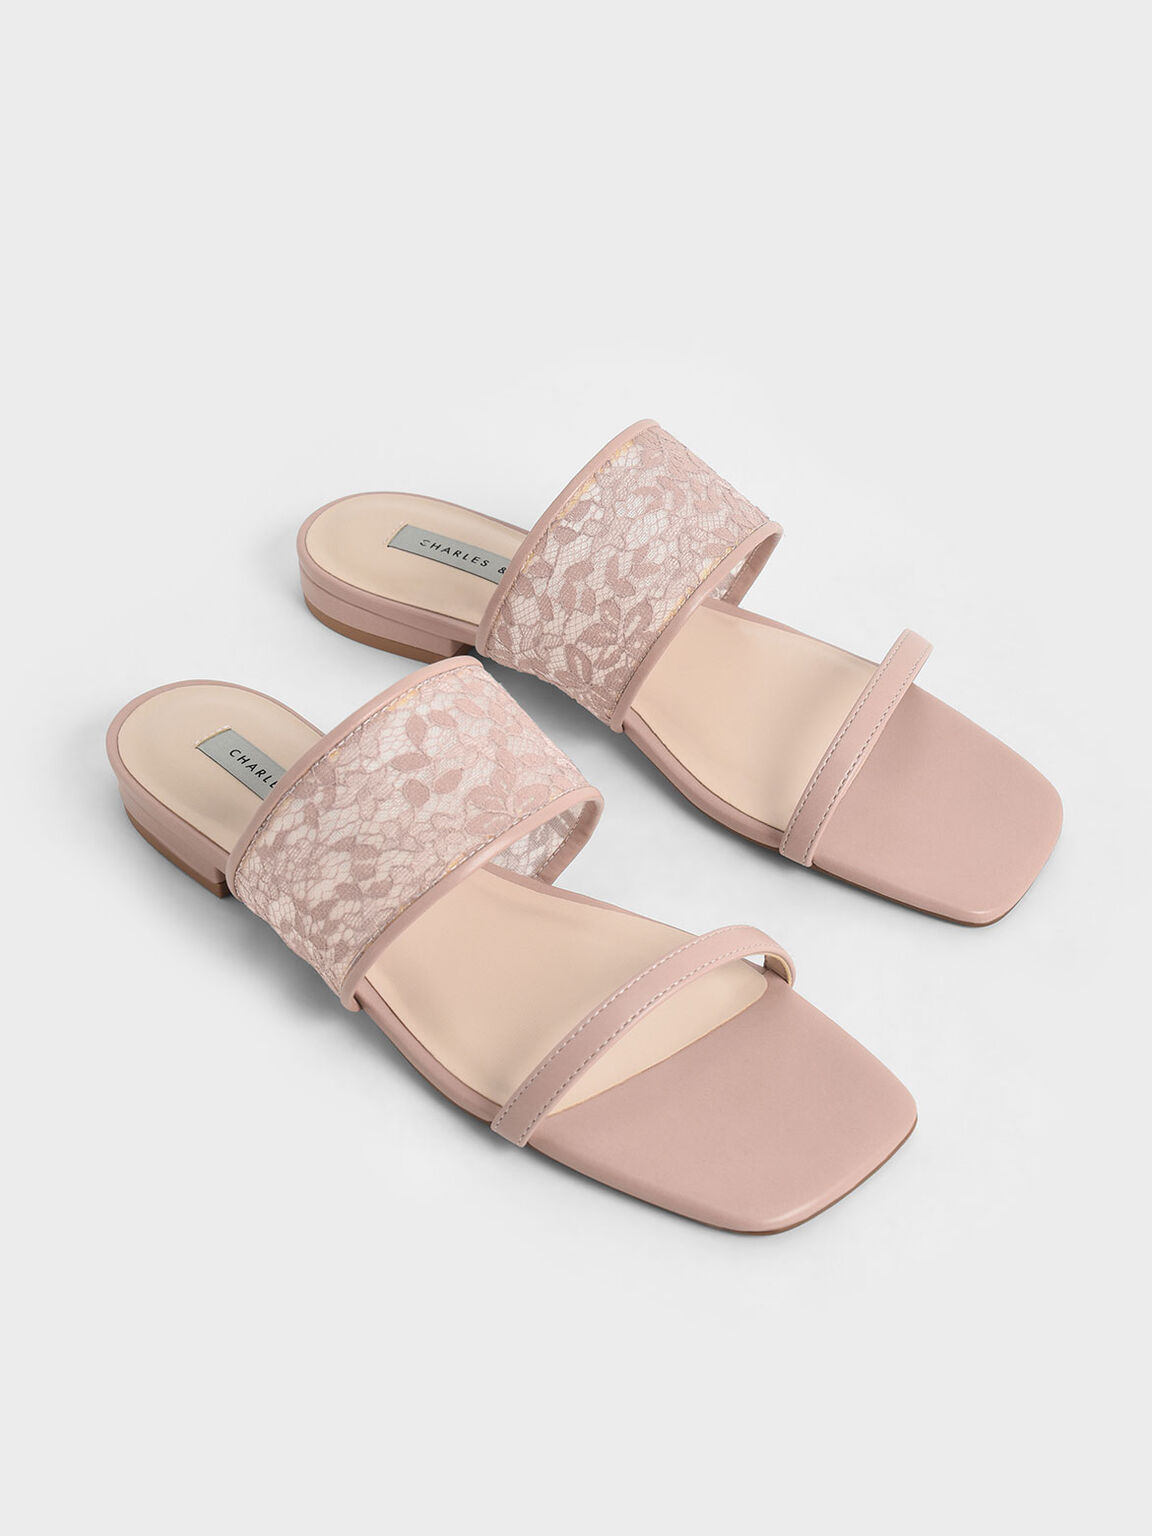 Lace & Mesh Slide Sandals, Pink, hi-res